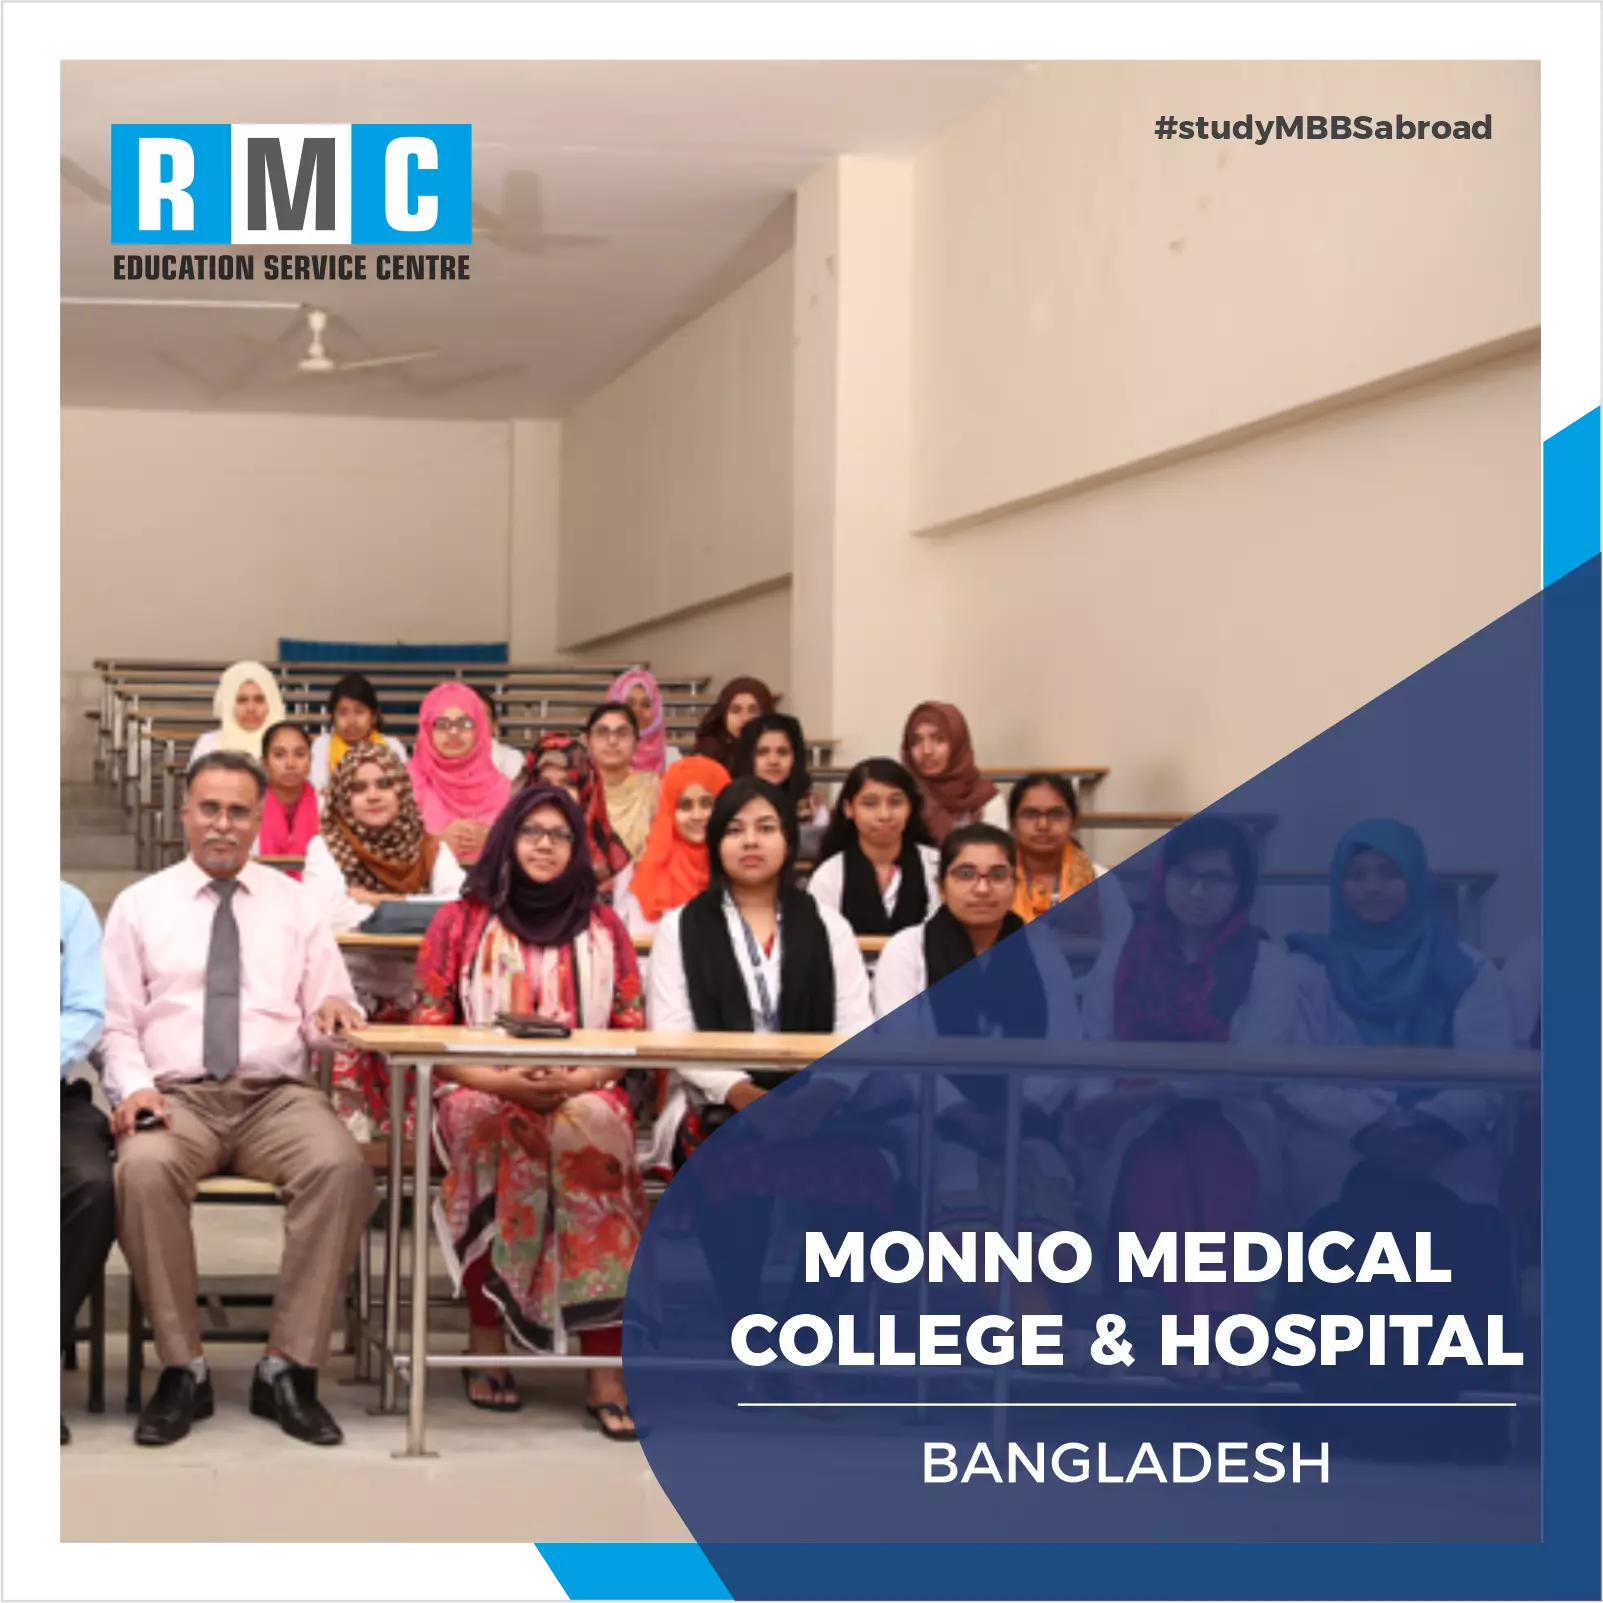 Monno Medical College & Hospital